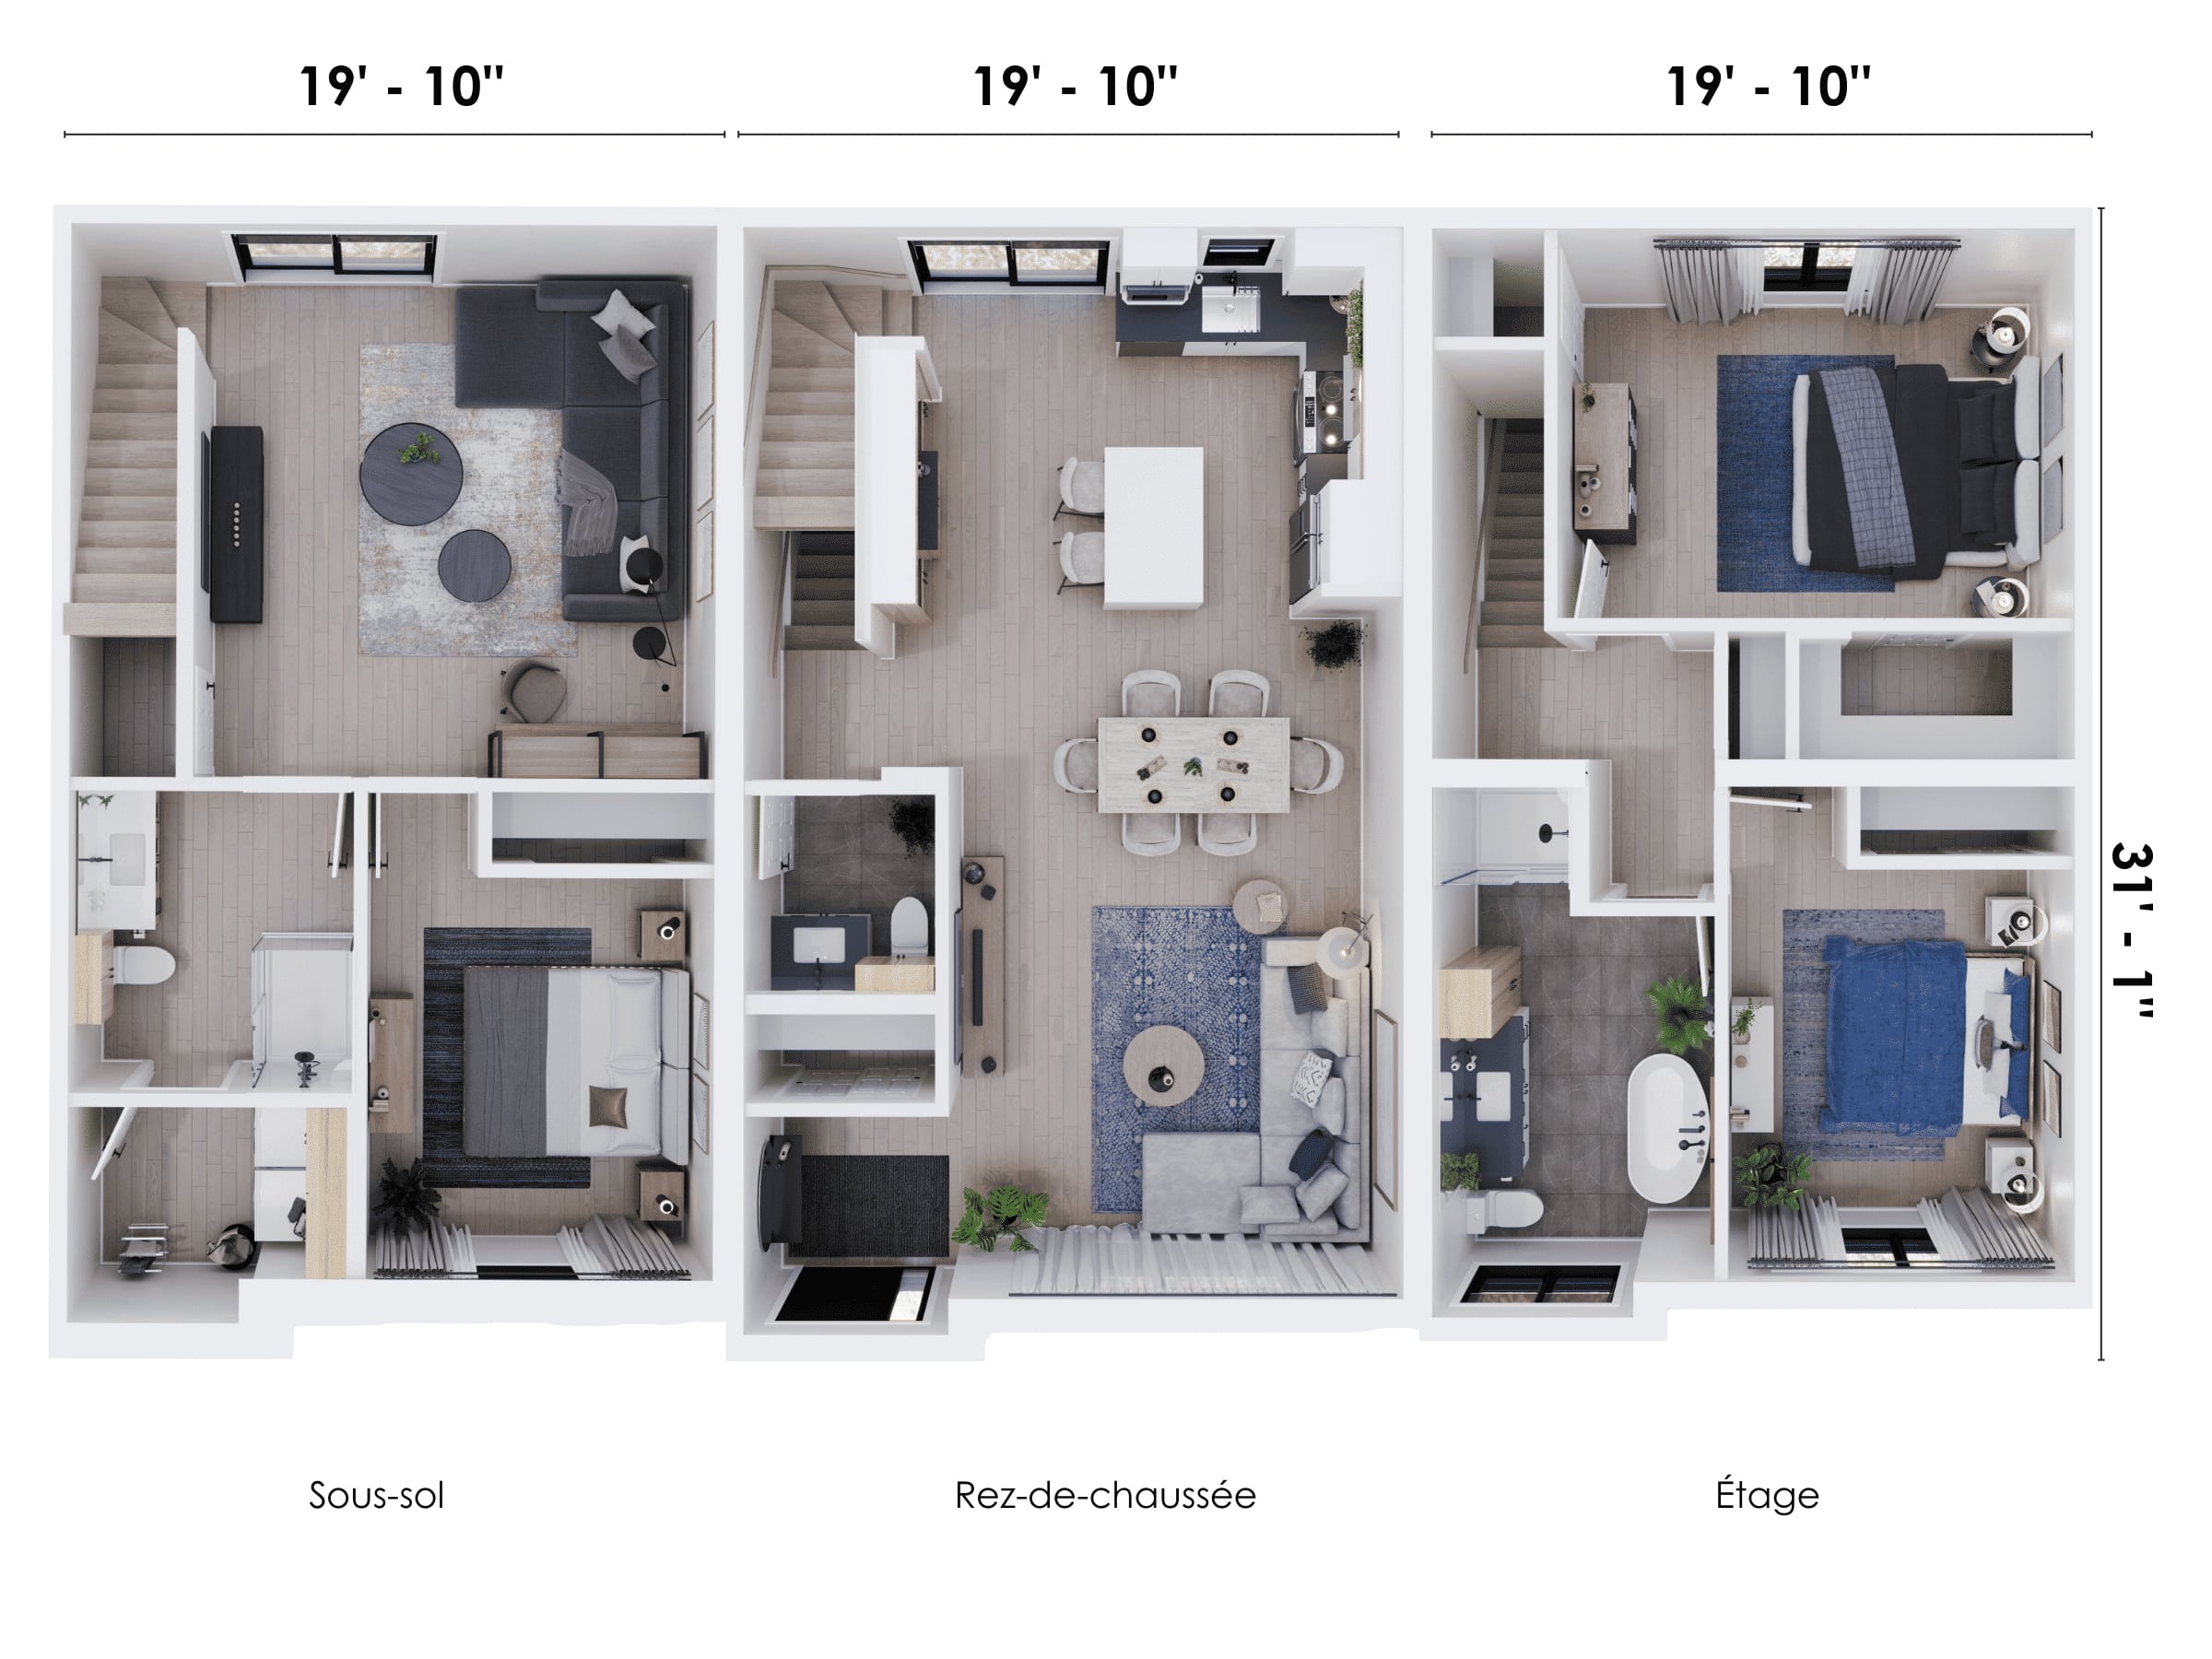 Le modèle Onesto est une maison de ville de plain-pied de stype contemporain. Vue du plan des trois etages en 3D